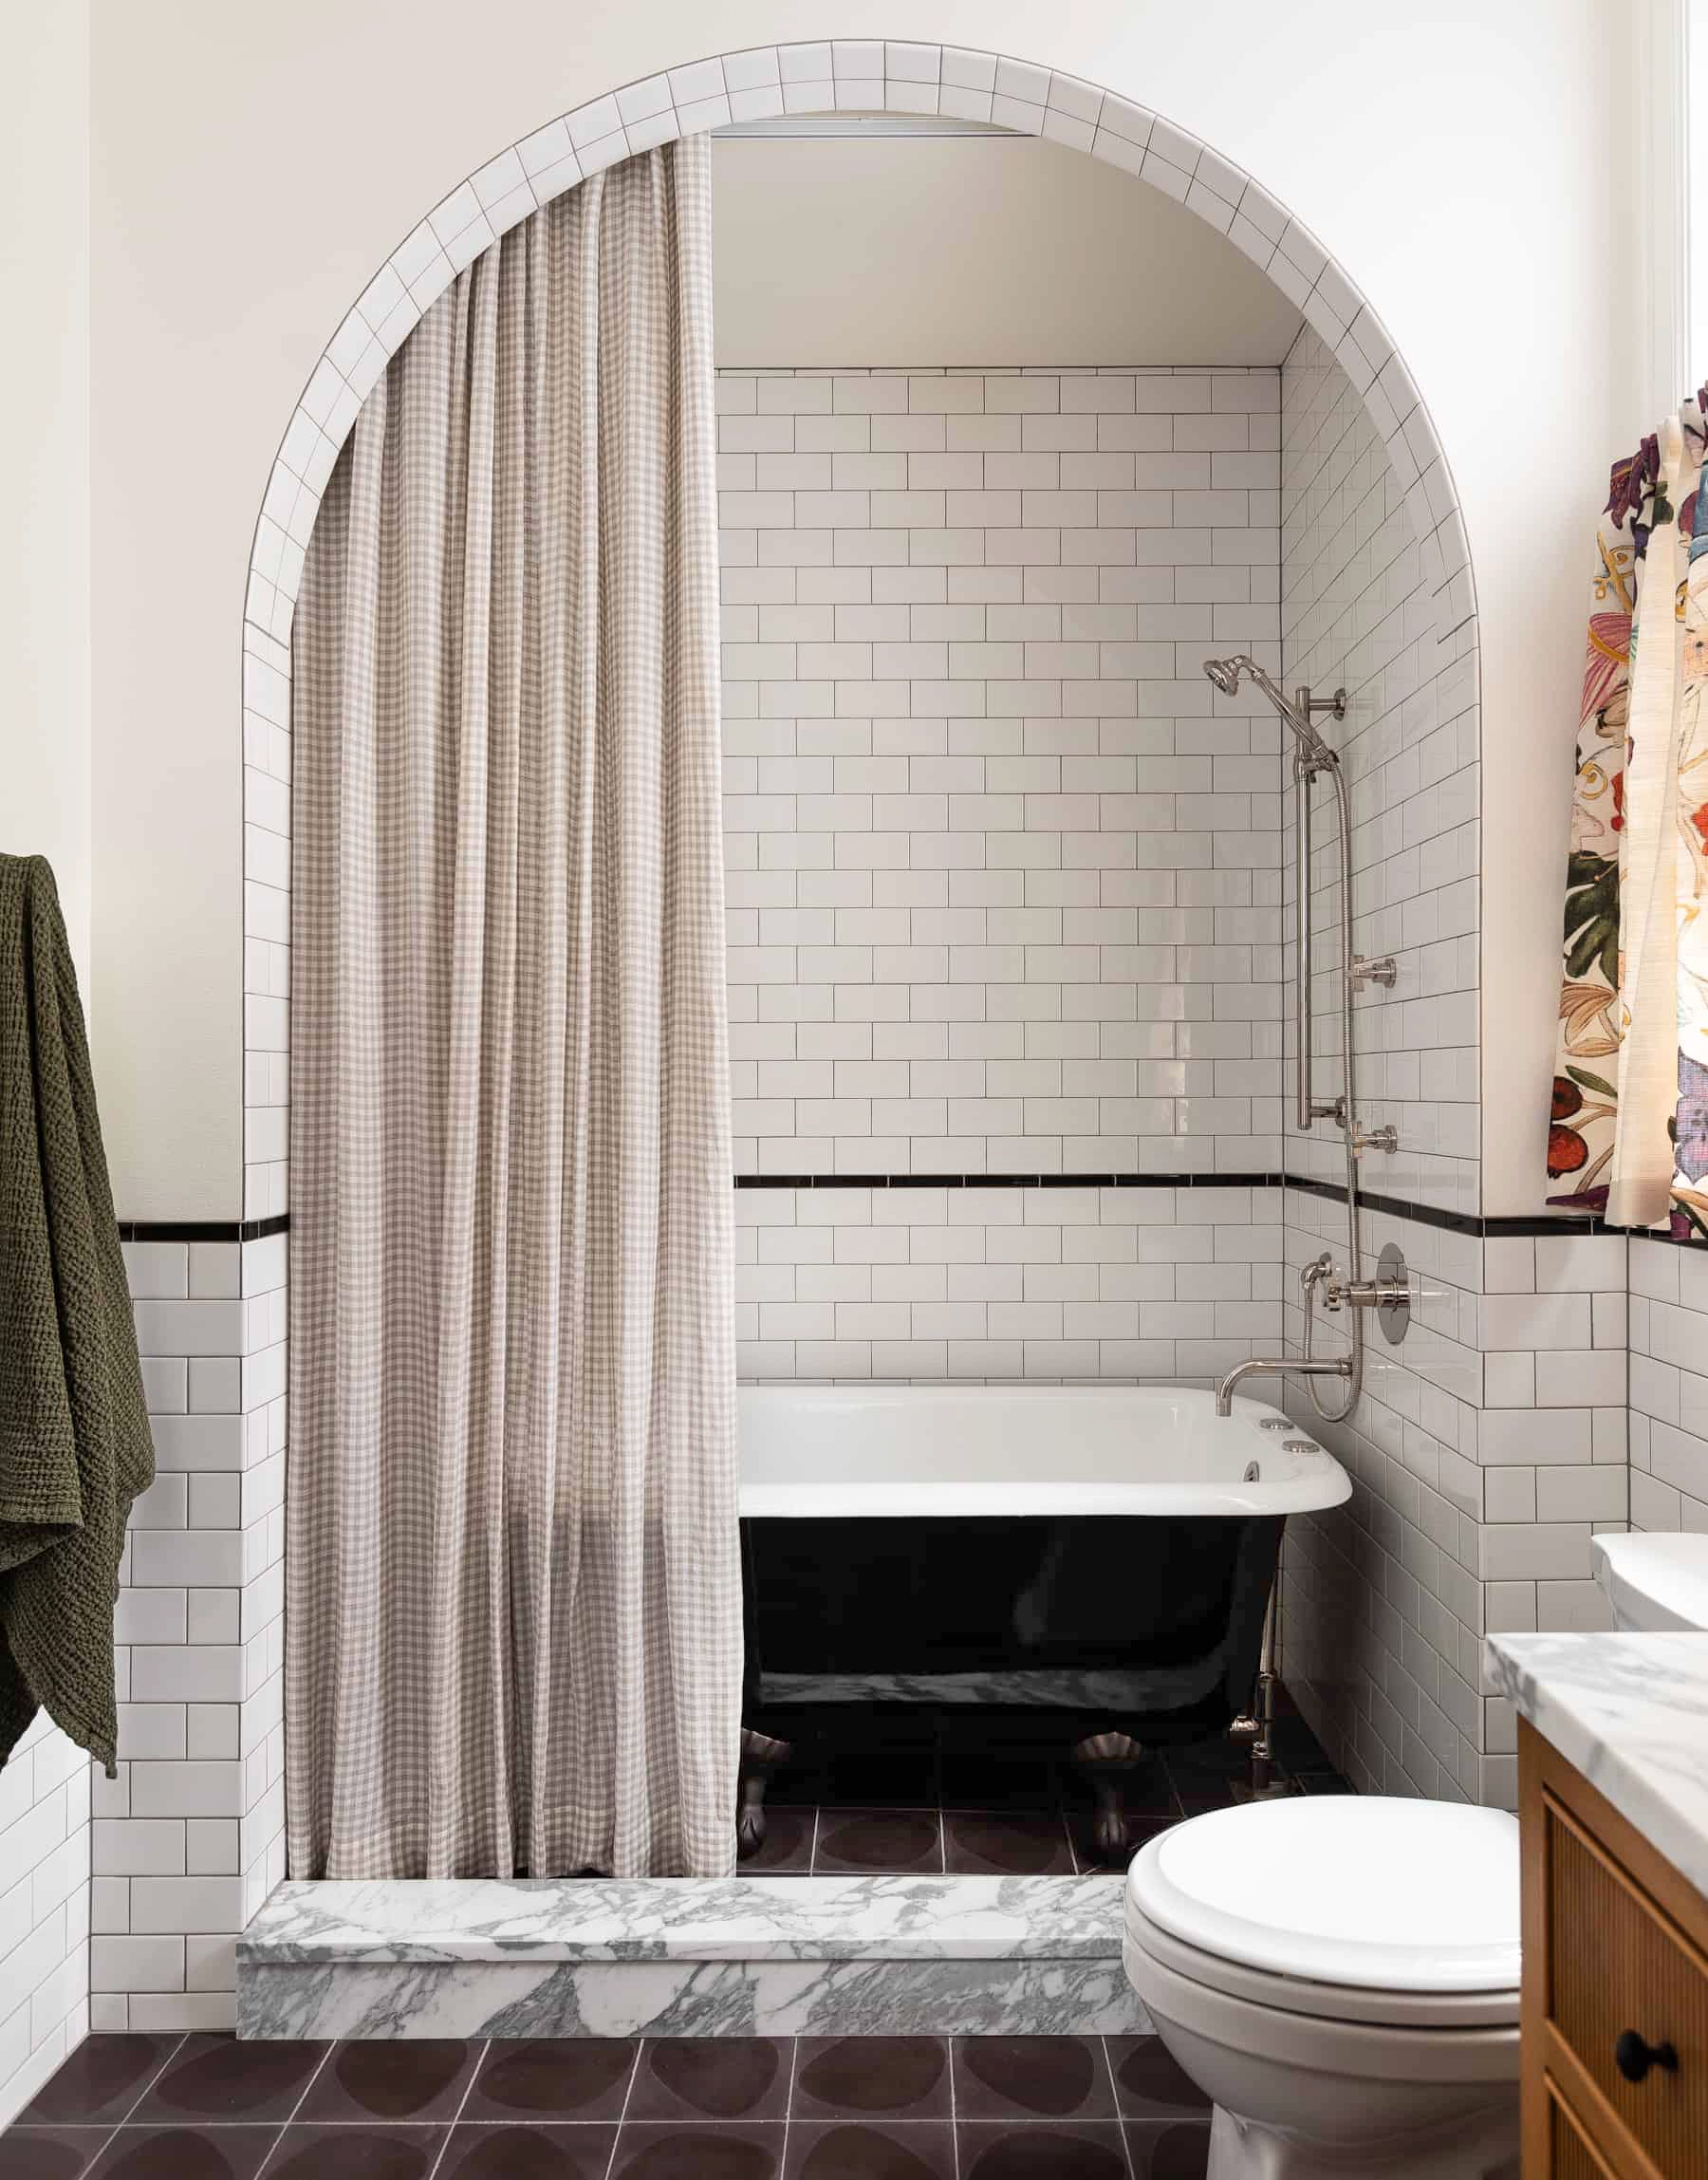 55 Bathroom Tile Ideas Bath, Tile For Bathroom Floor And Shower